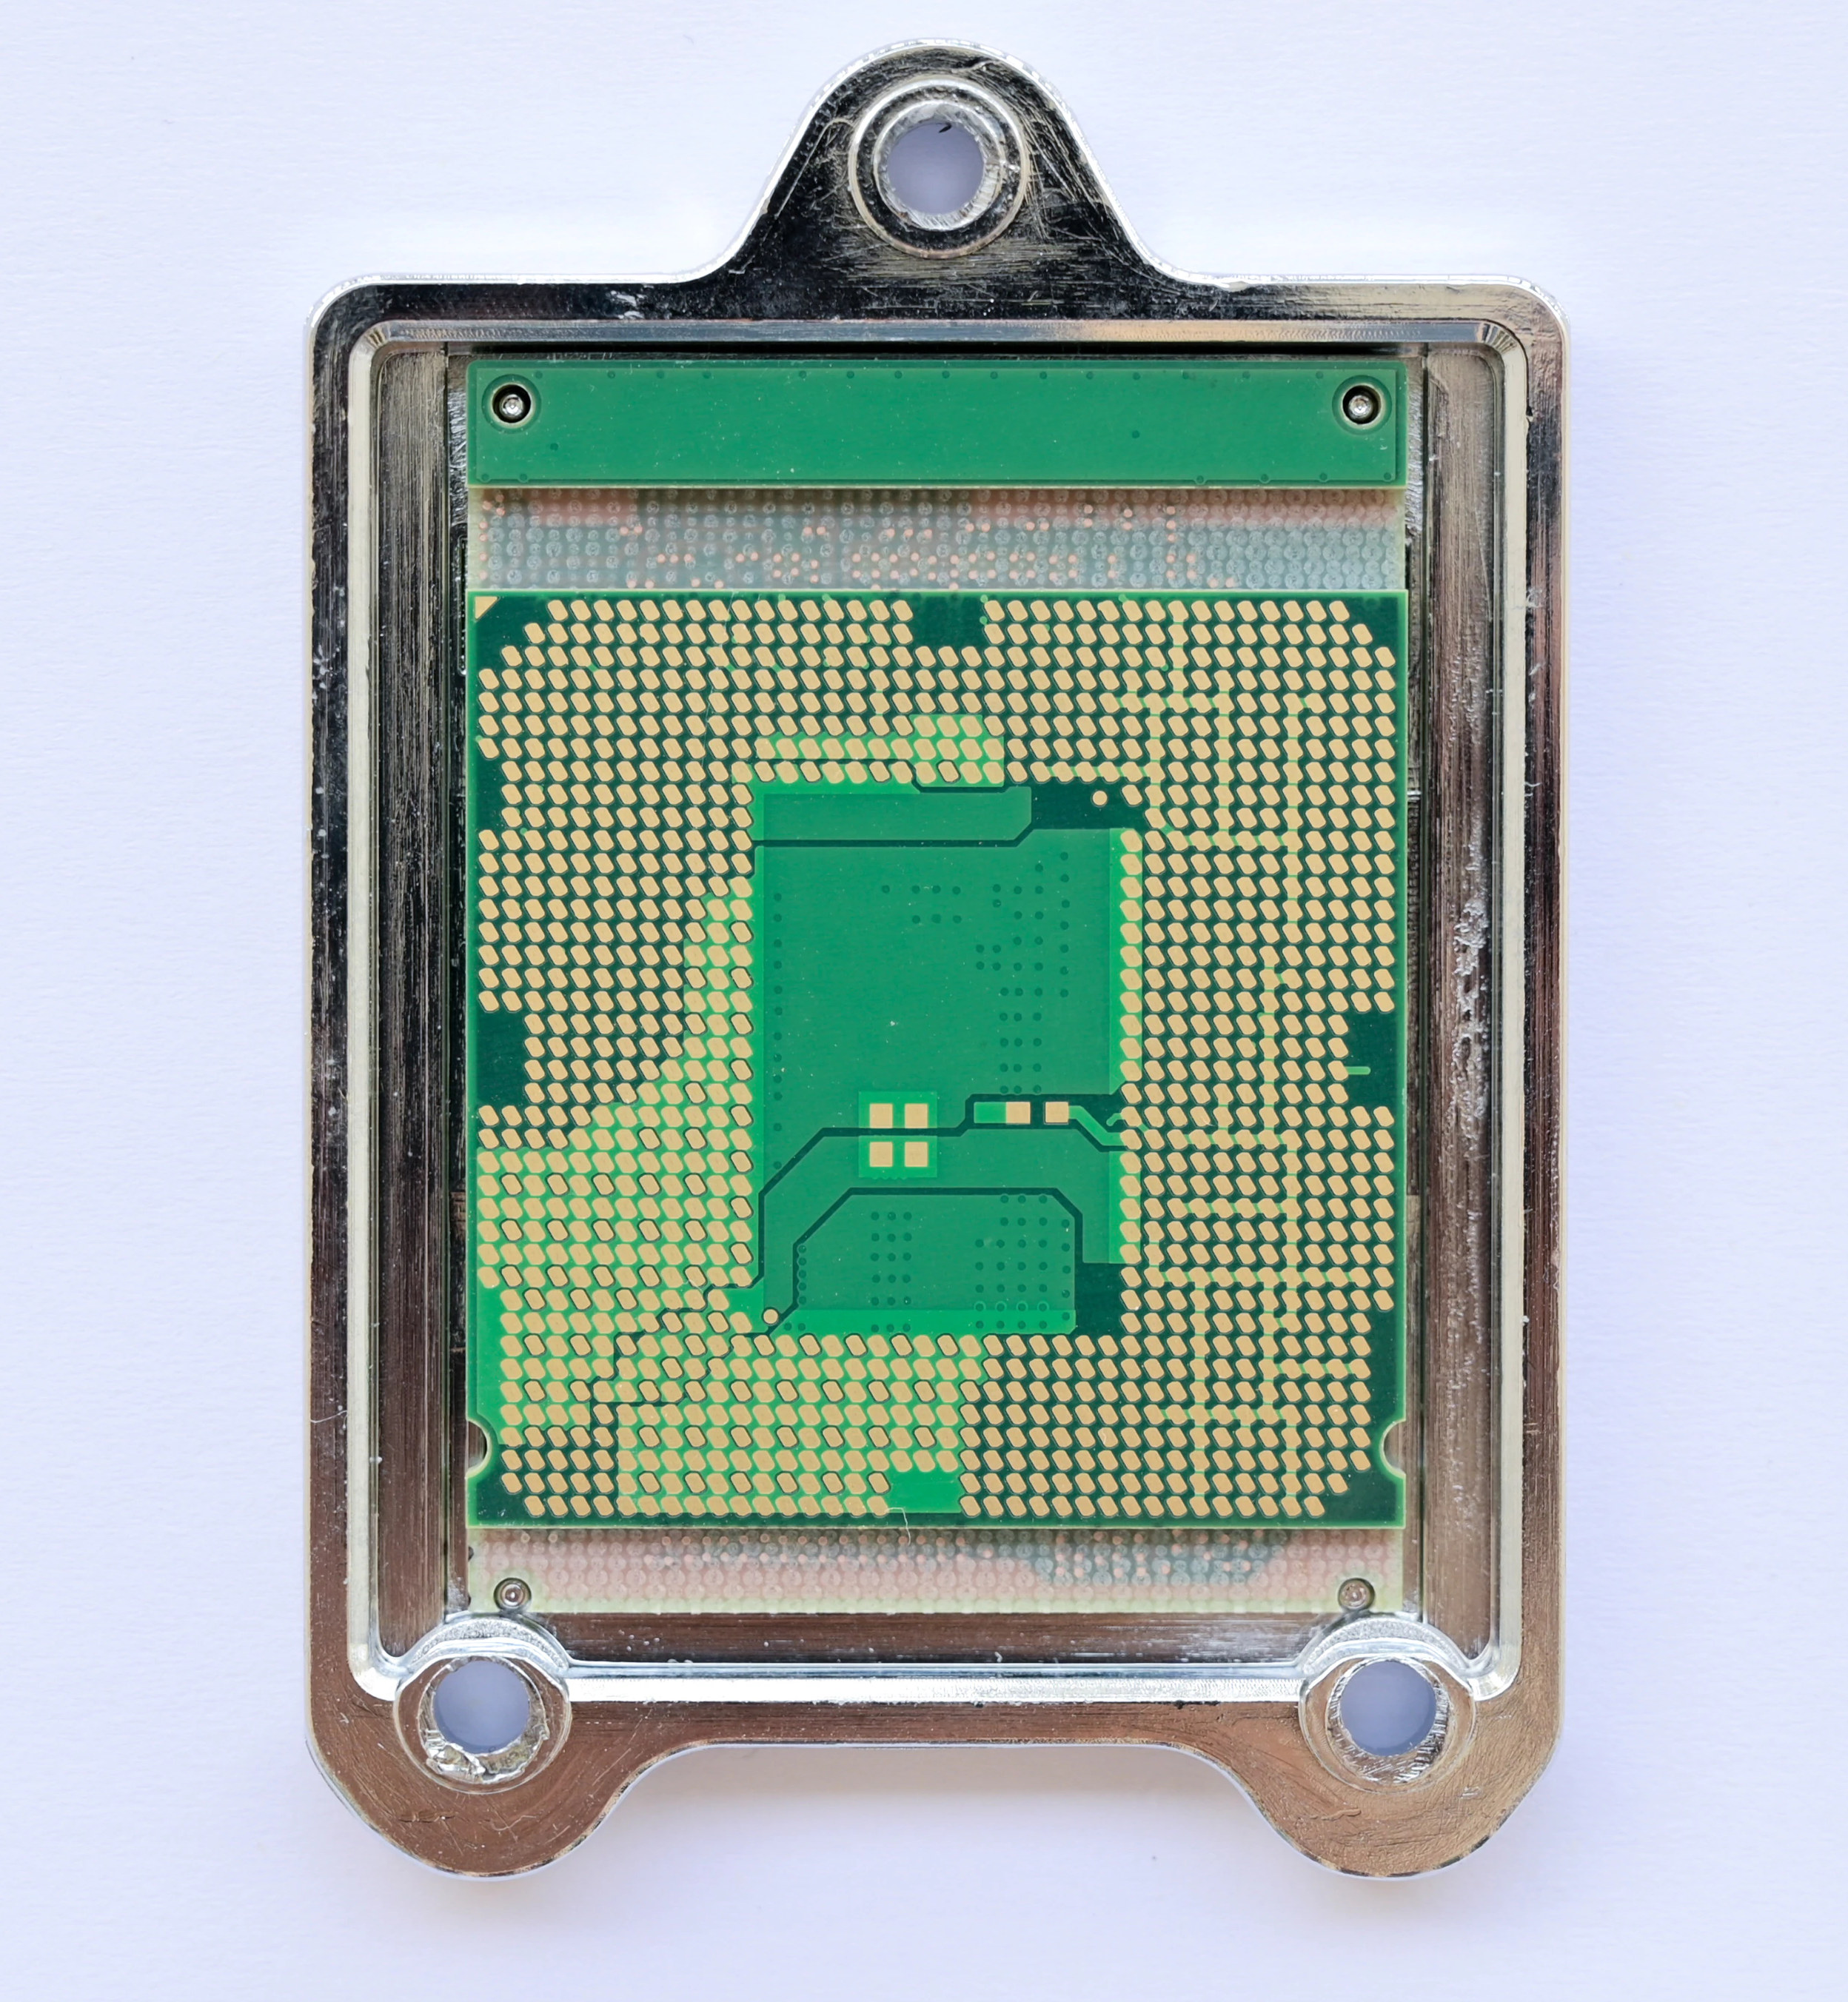 BGA CPU Socket LGA1151 1151, support de connecteur de Base CPU I3 I5 I7  avec billes en étain